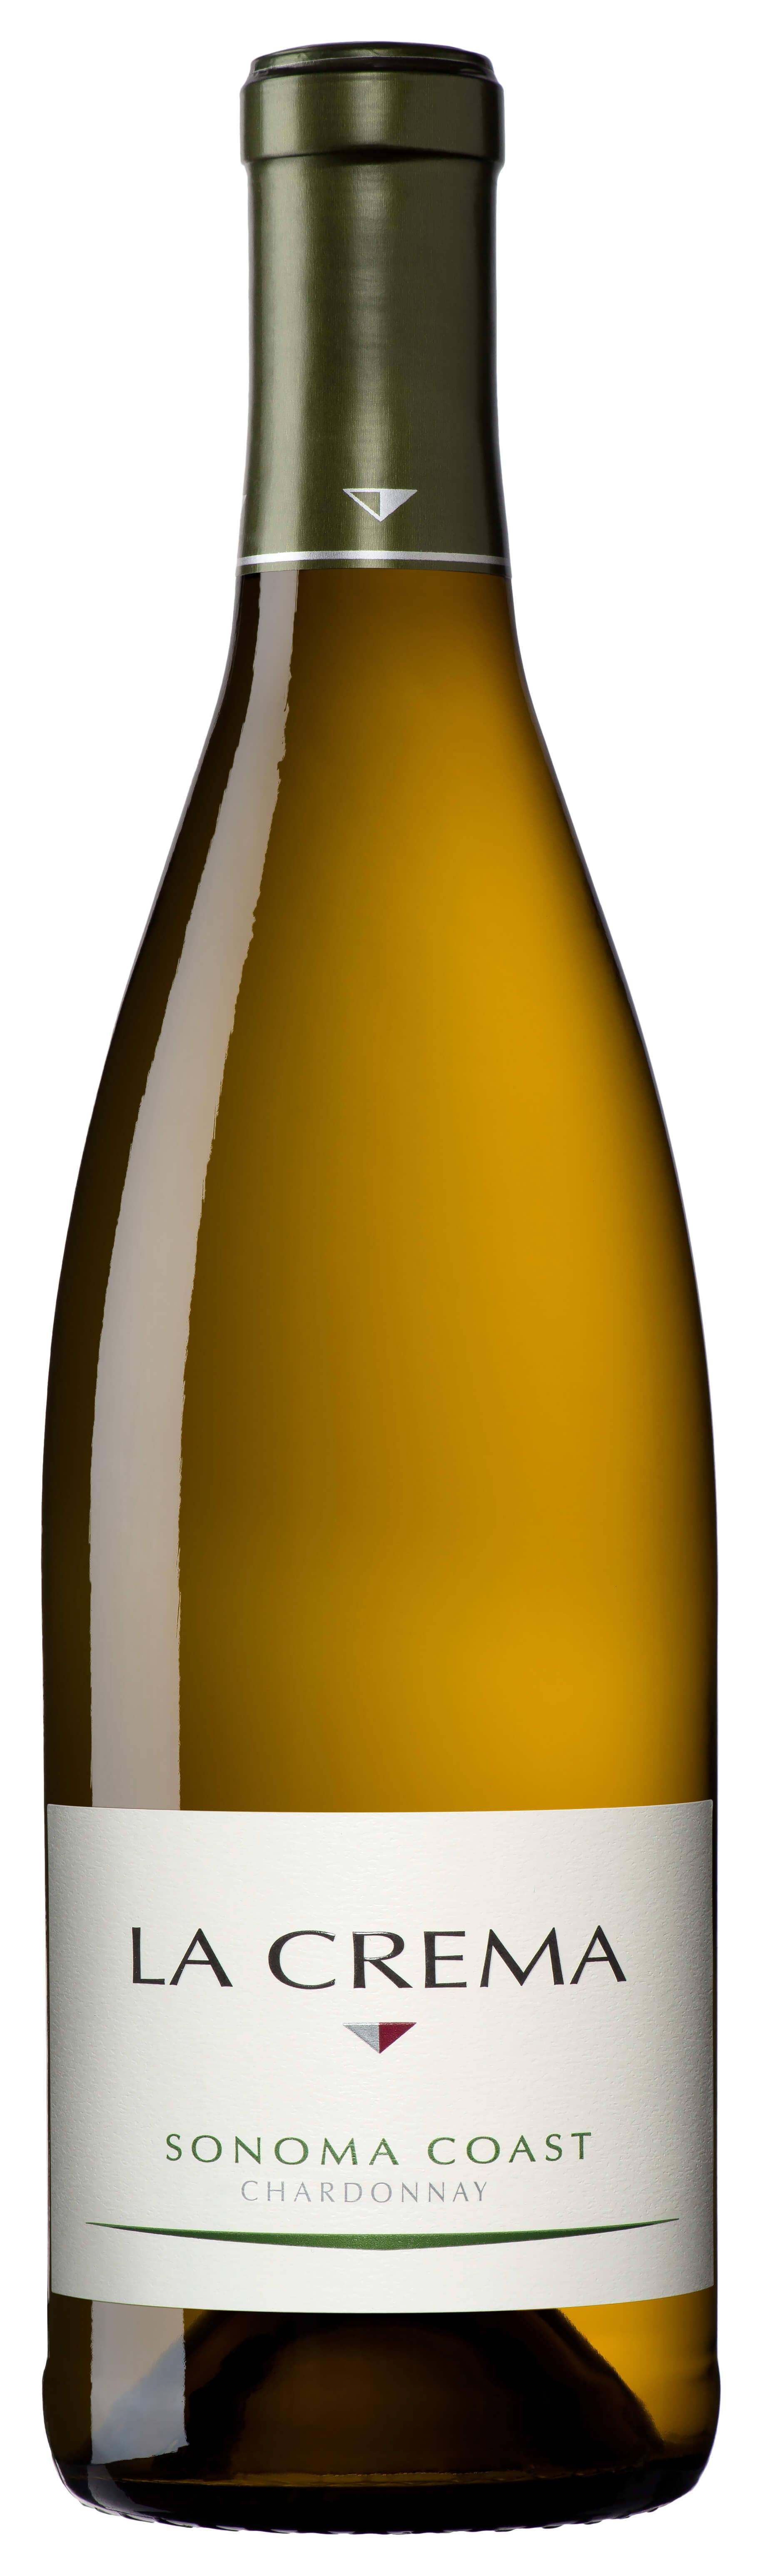 La Crema Chardonnay, Sonoma Coast, 2003 - 375 ml